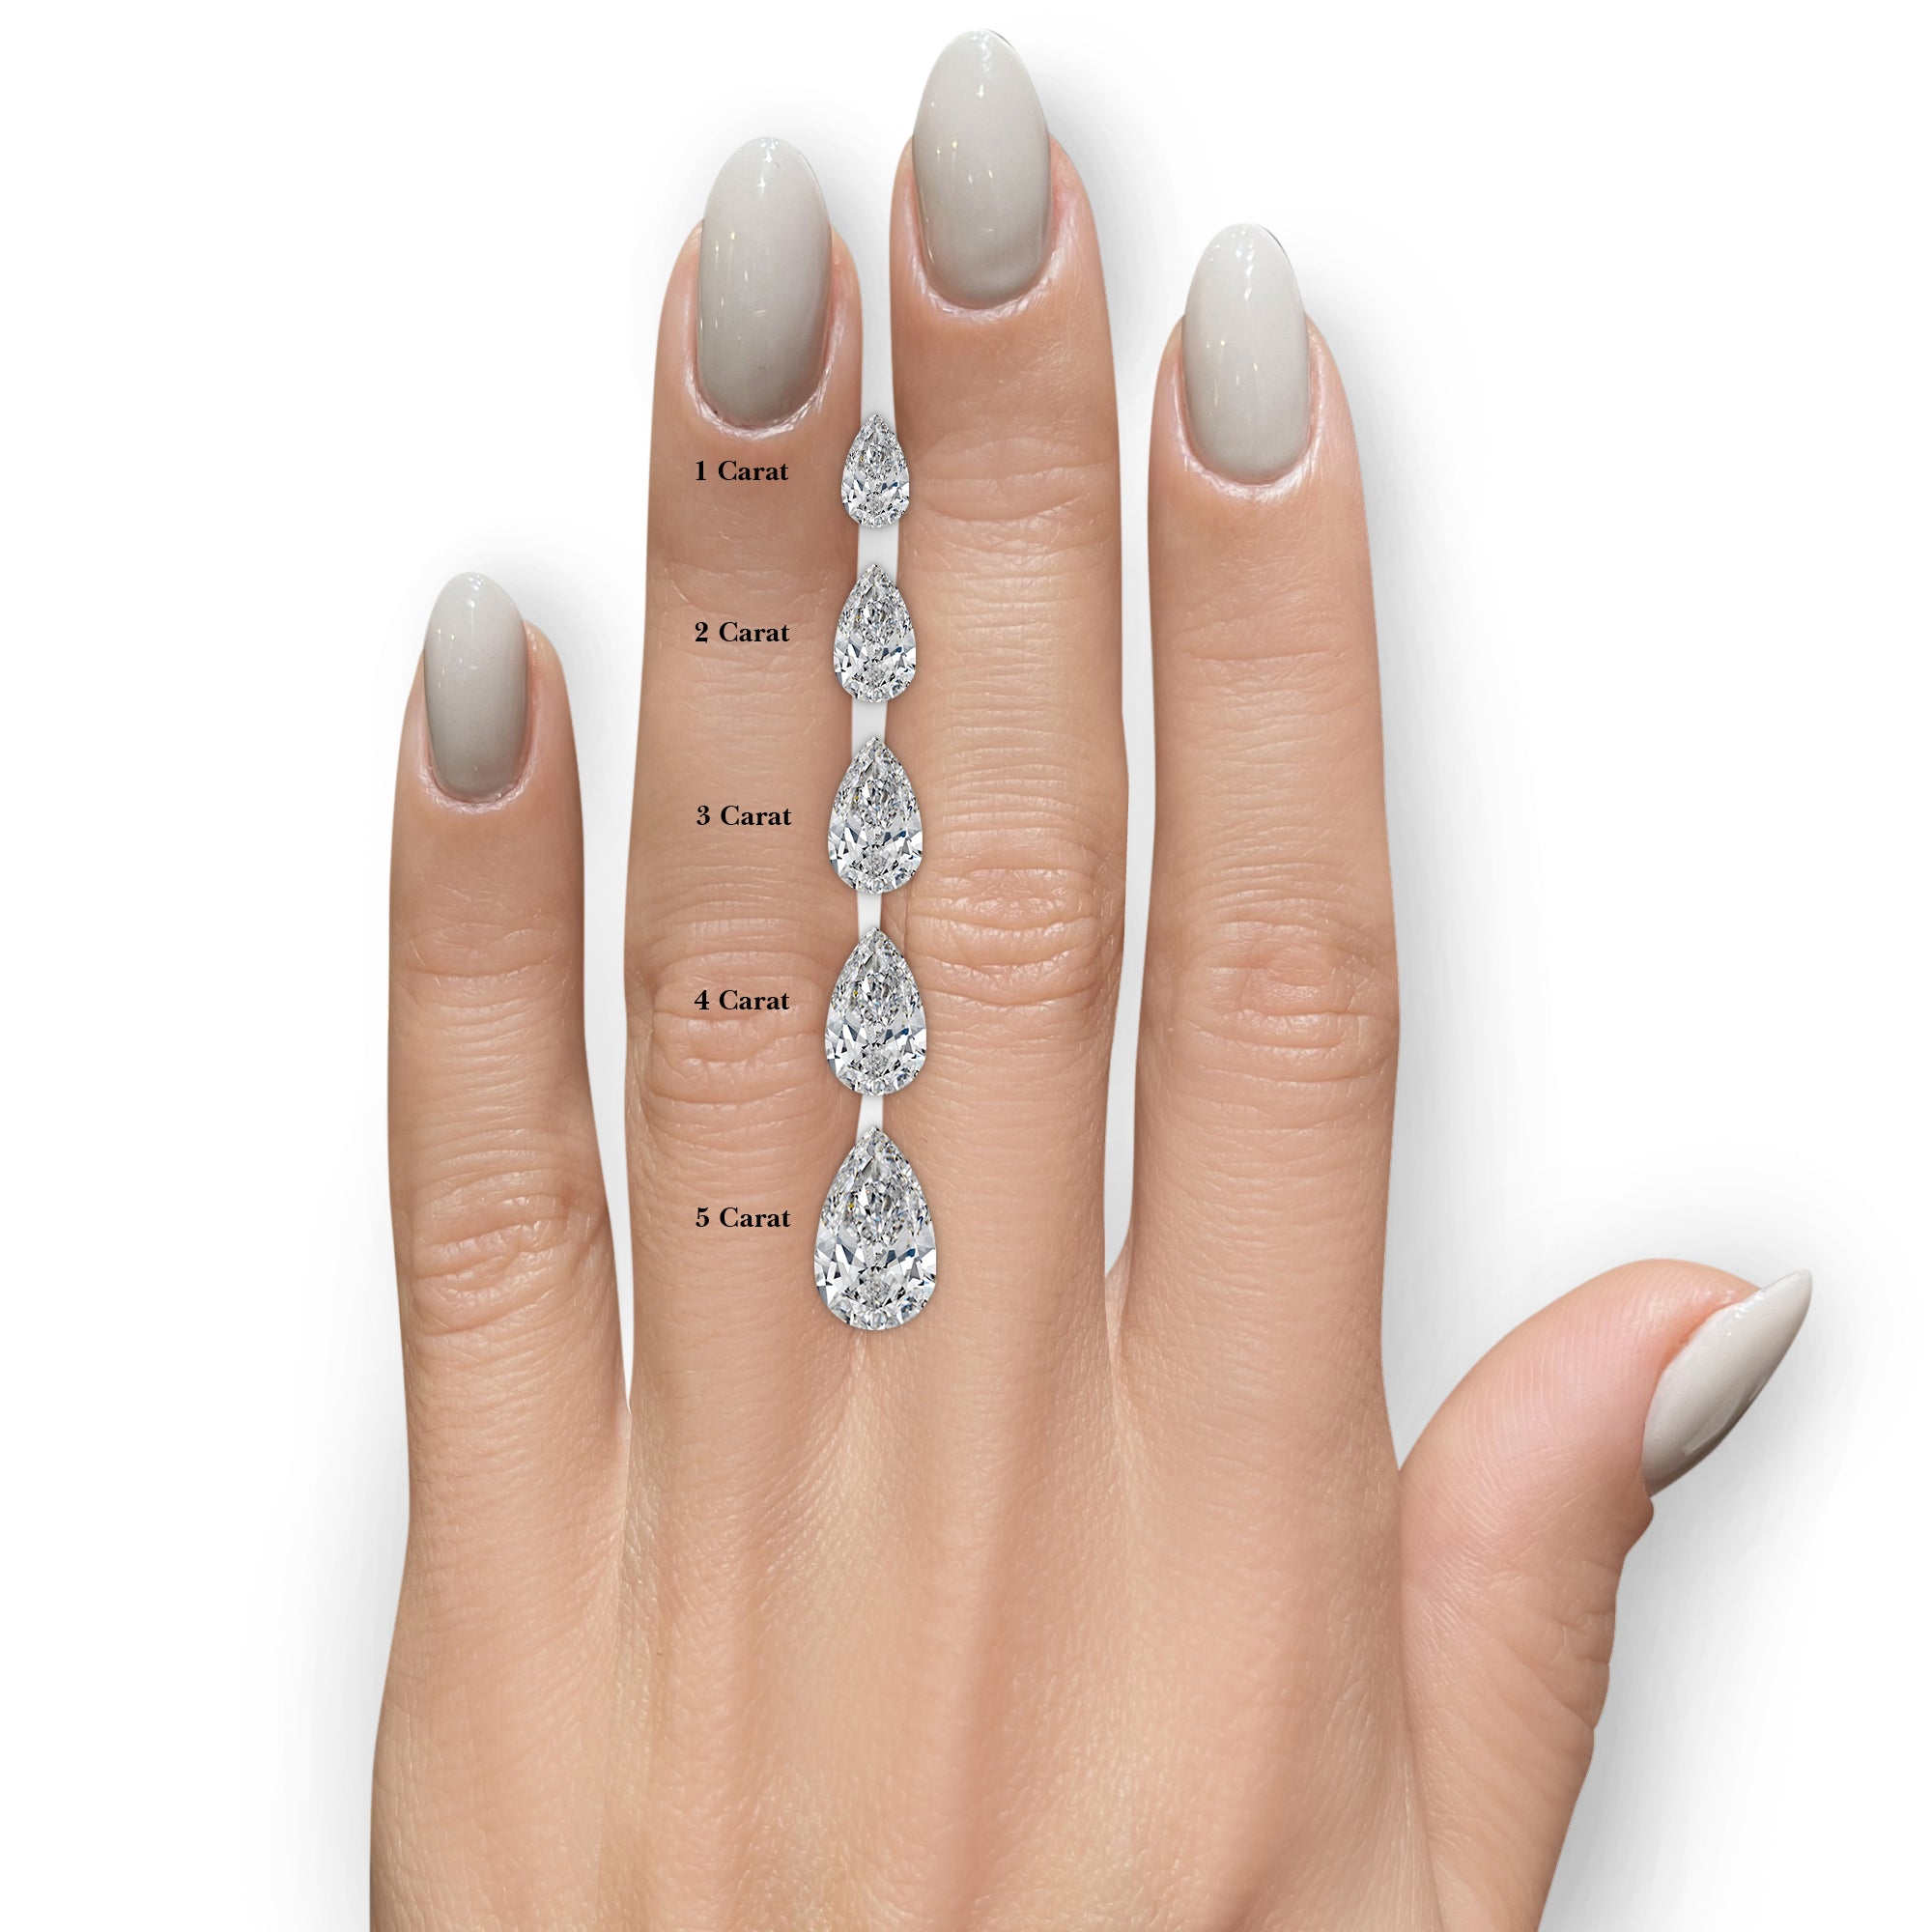 Mabel Lab Grown Diamond Ring -18K White Gold